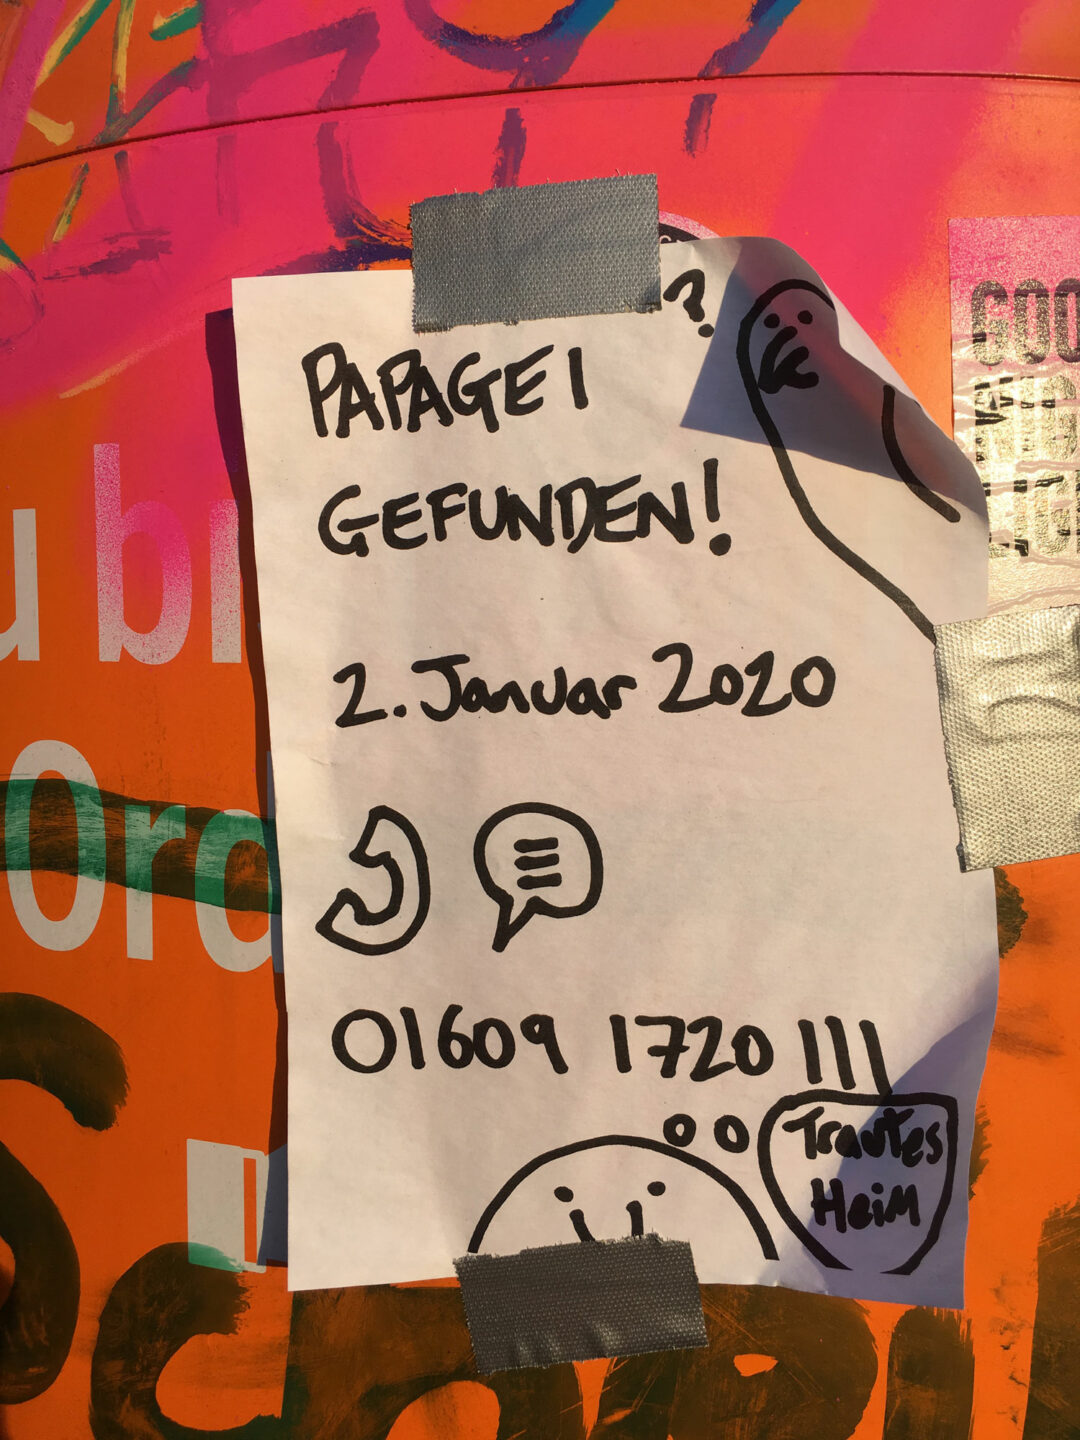 Papagei gefunden in Berlin-Friedrichshain, 2020